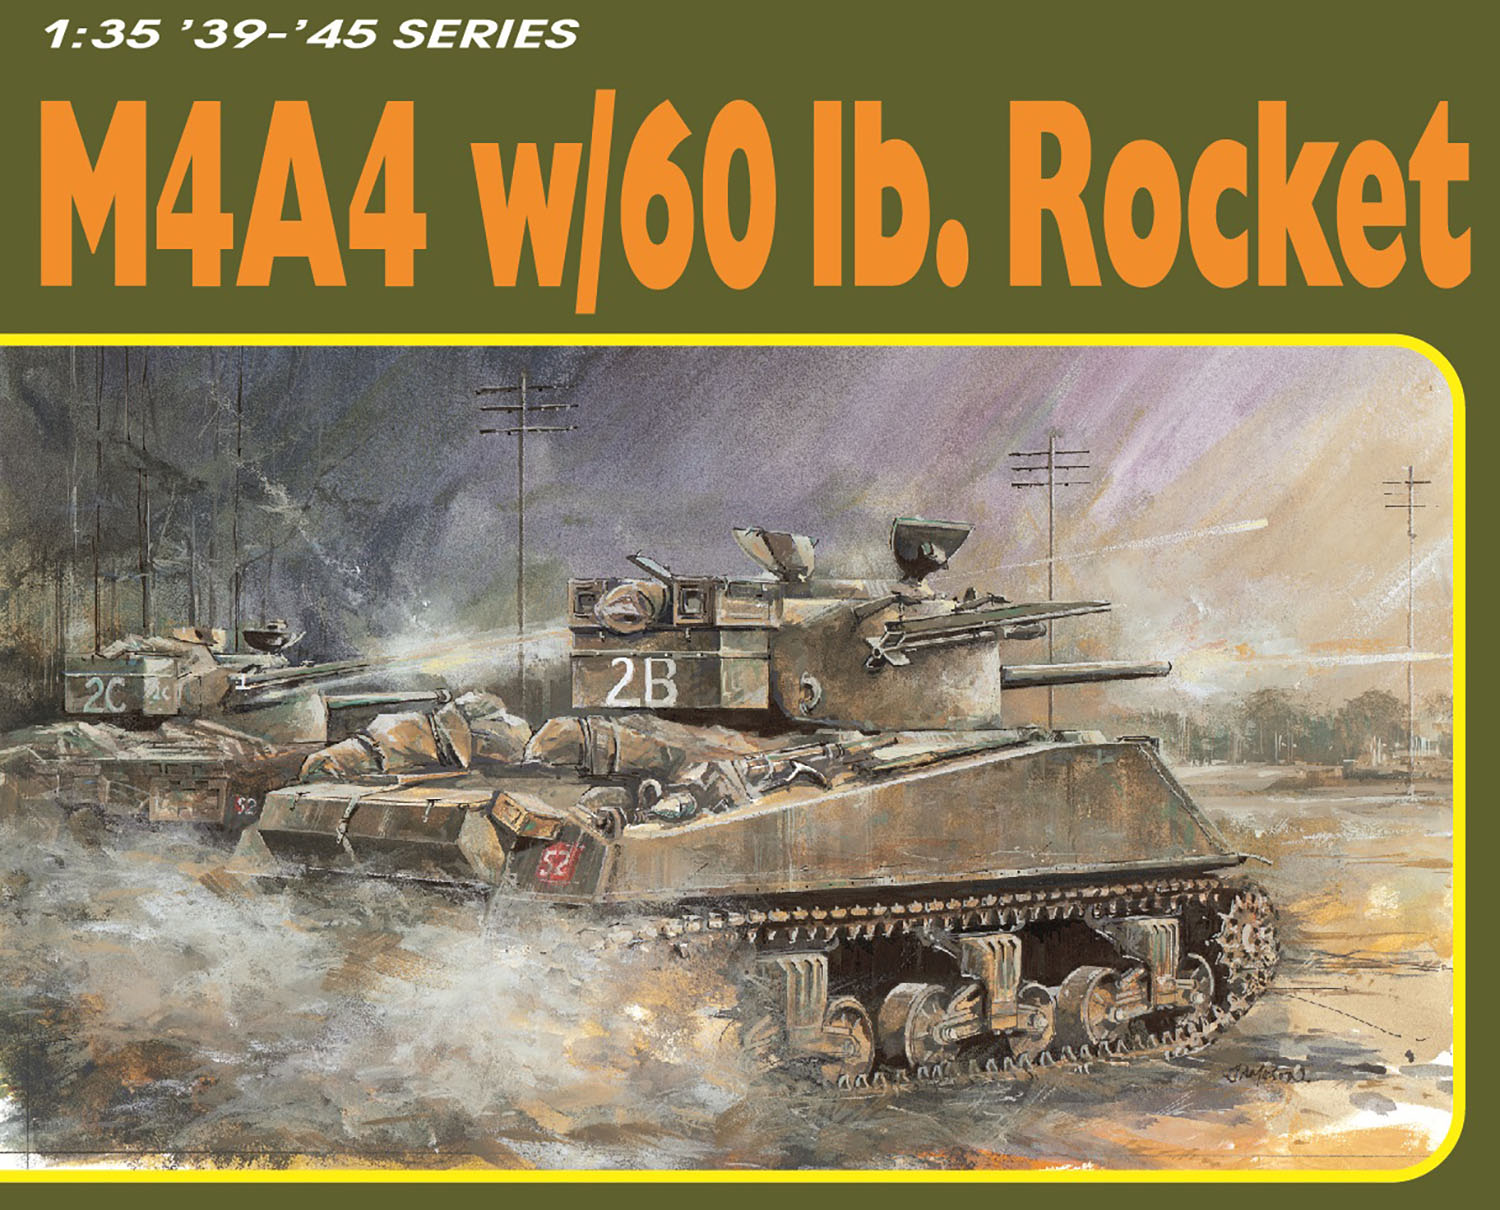 1/35 WW.II イギリス軍 M4A4 シャーマン 60ポンドロケット弾搭載型 アルミ砲身/フィギュア/3Dプリント付属 豪